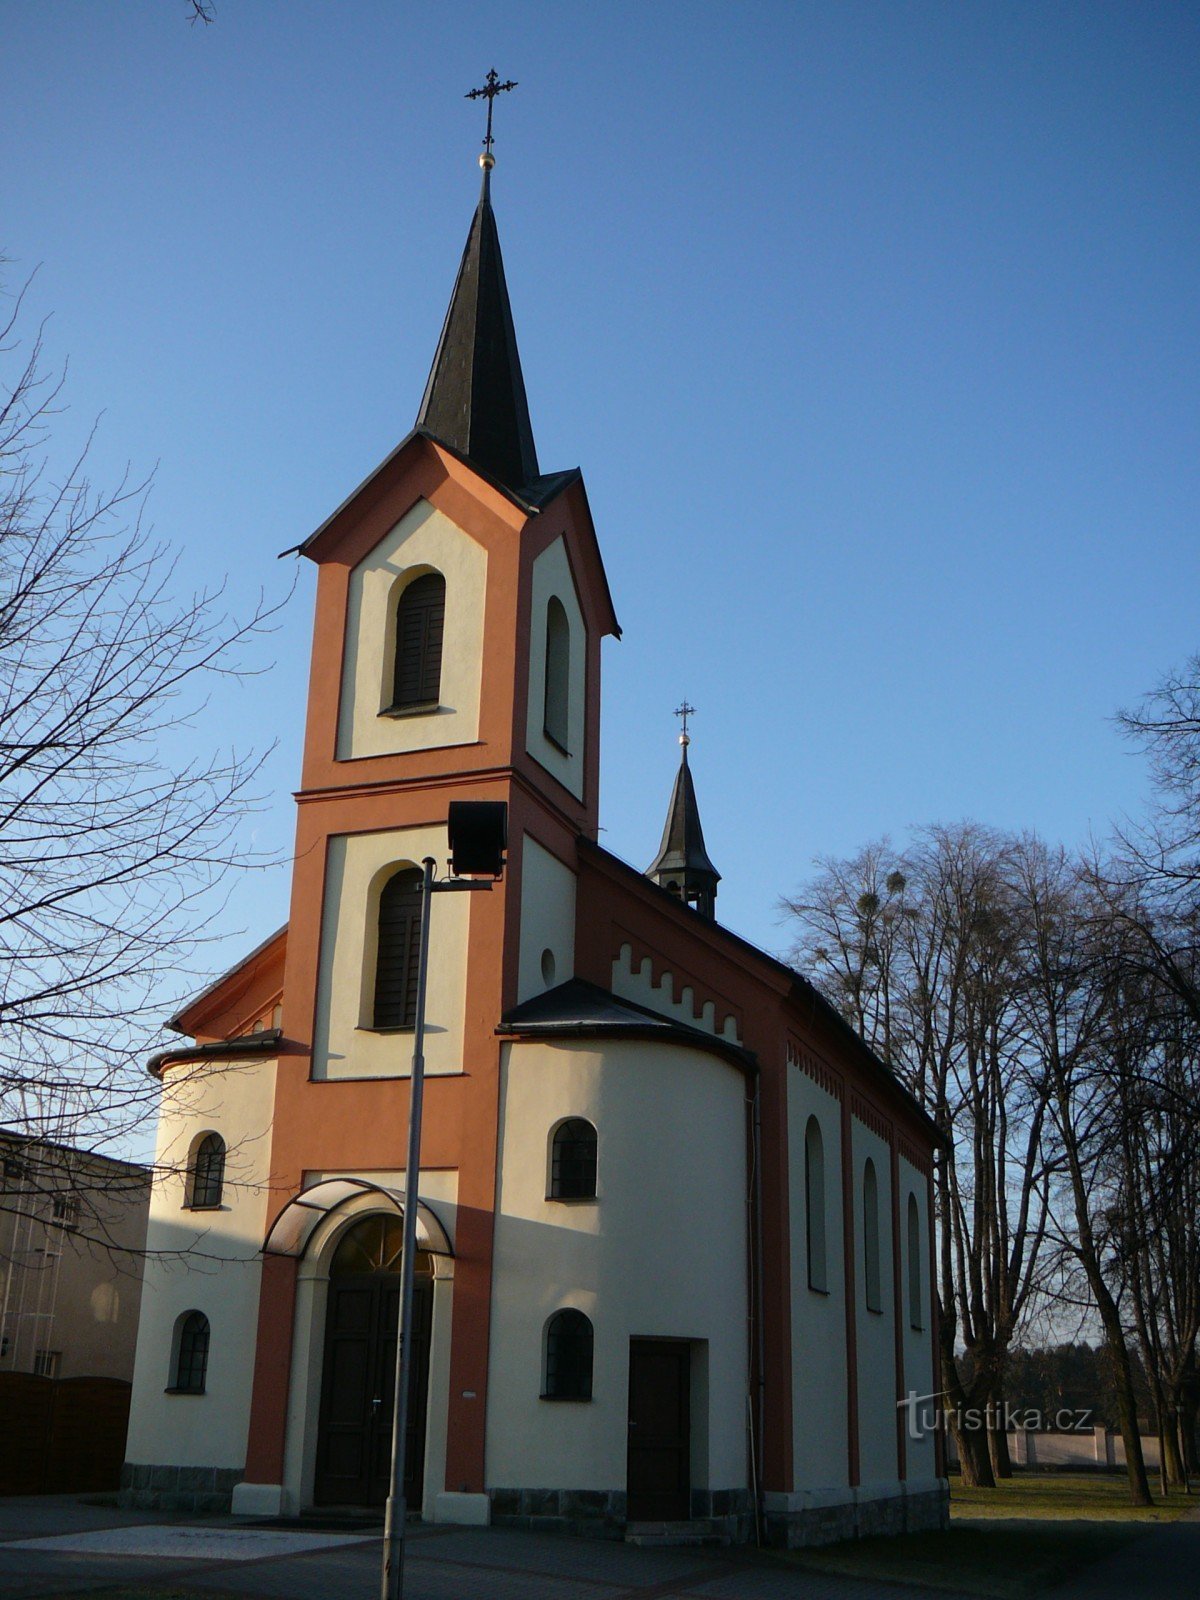 chapel of St. John of Nepomuk in Sviadnov